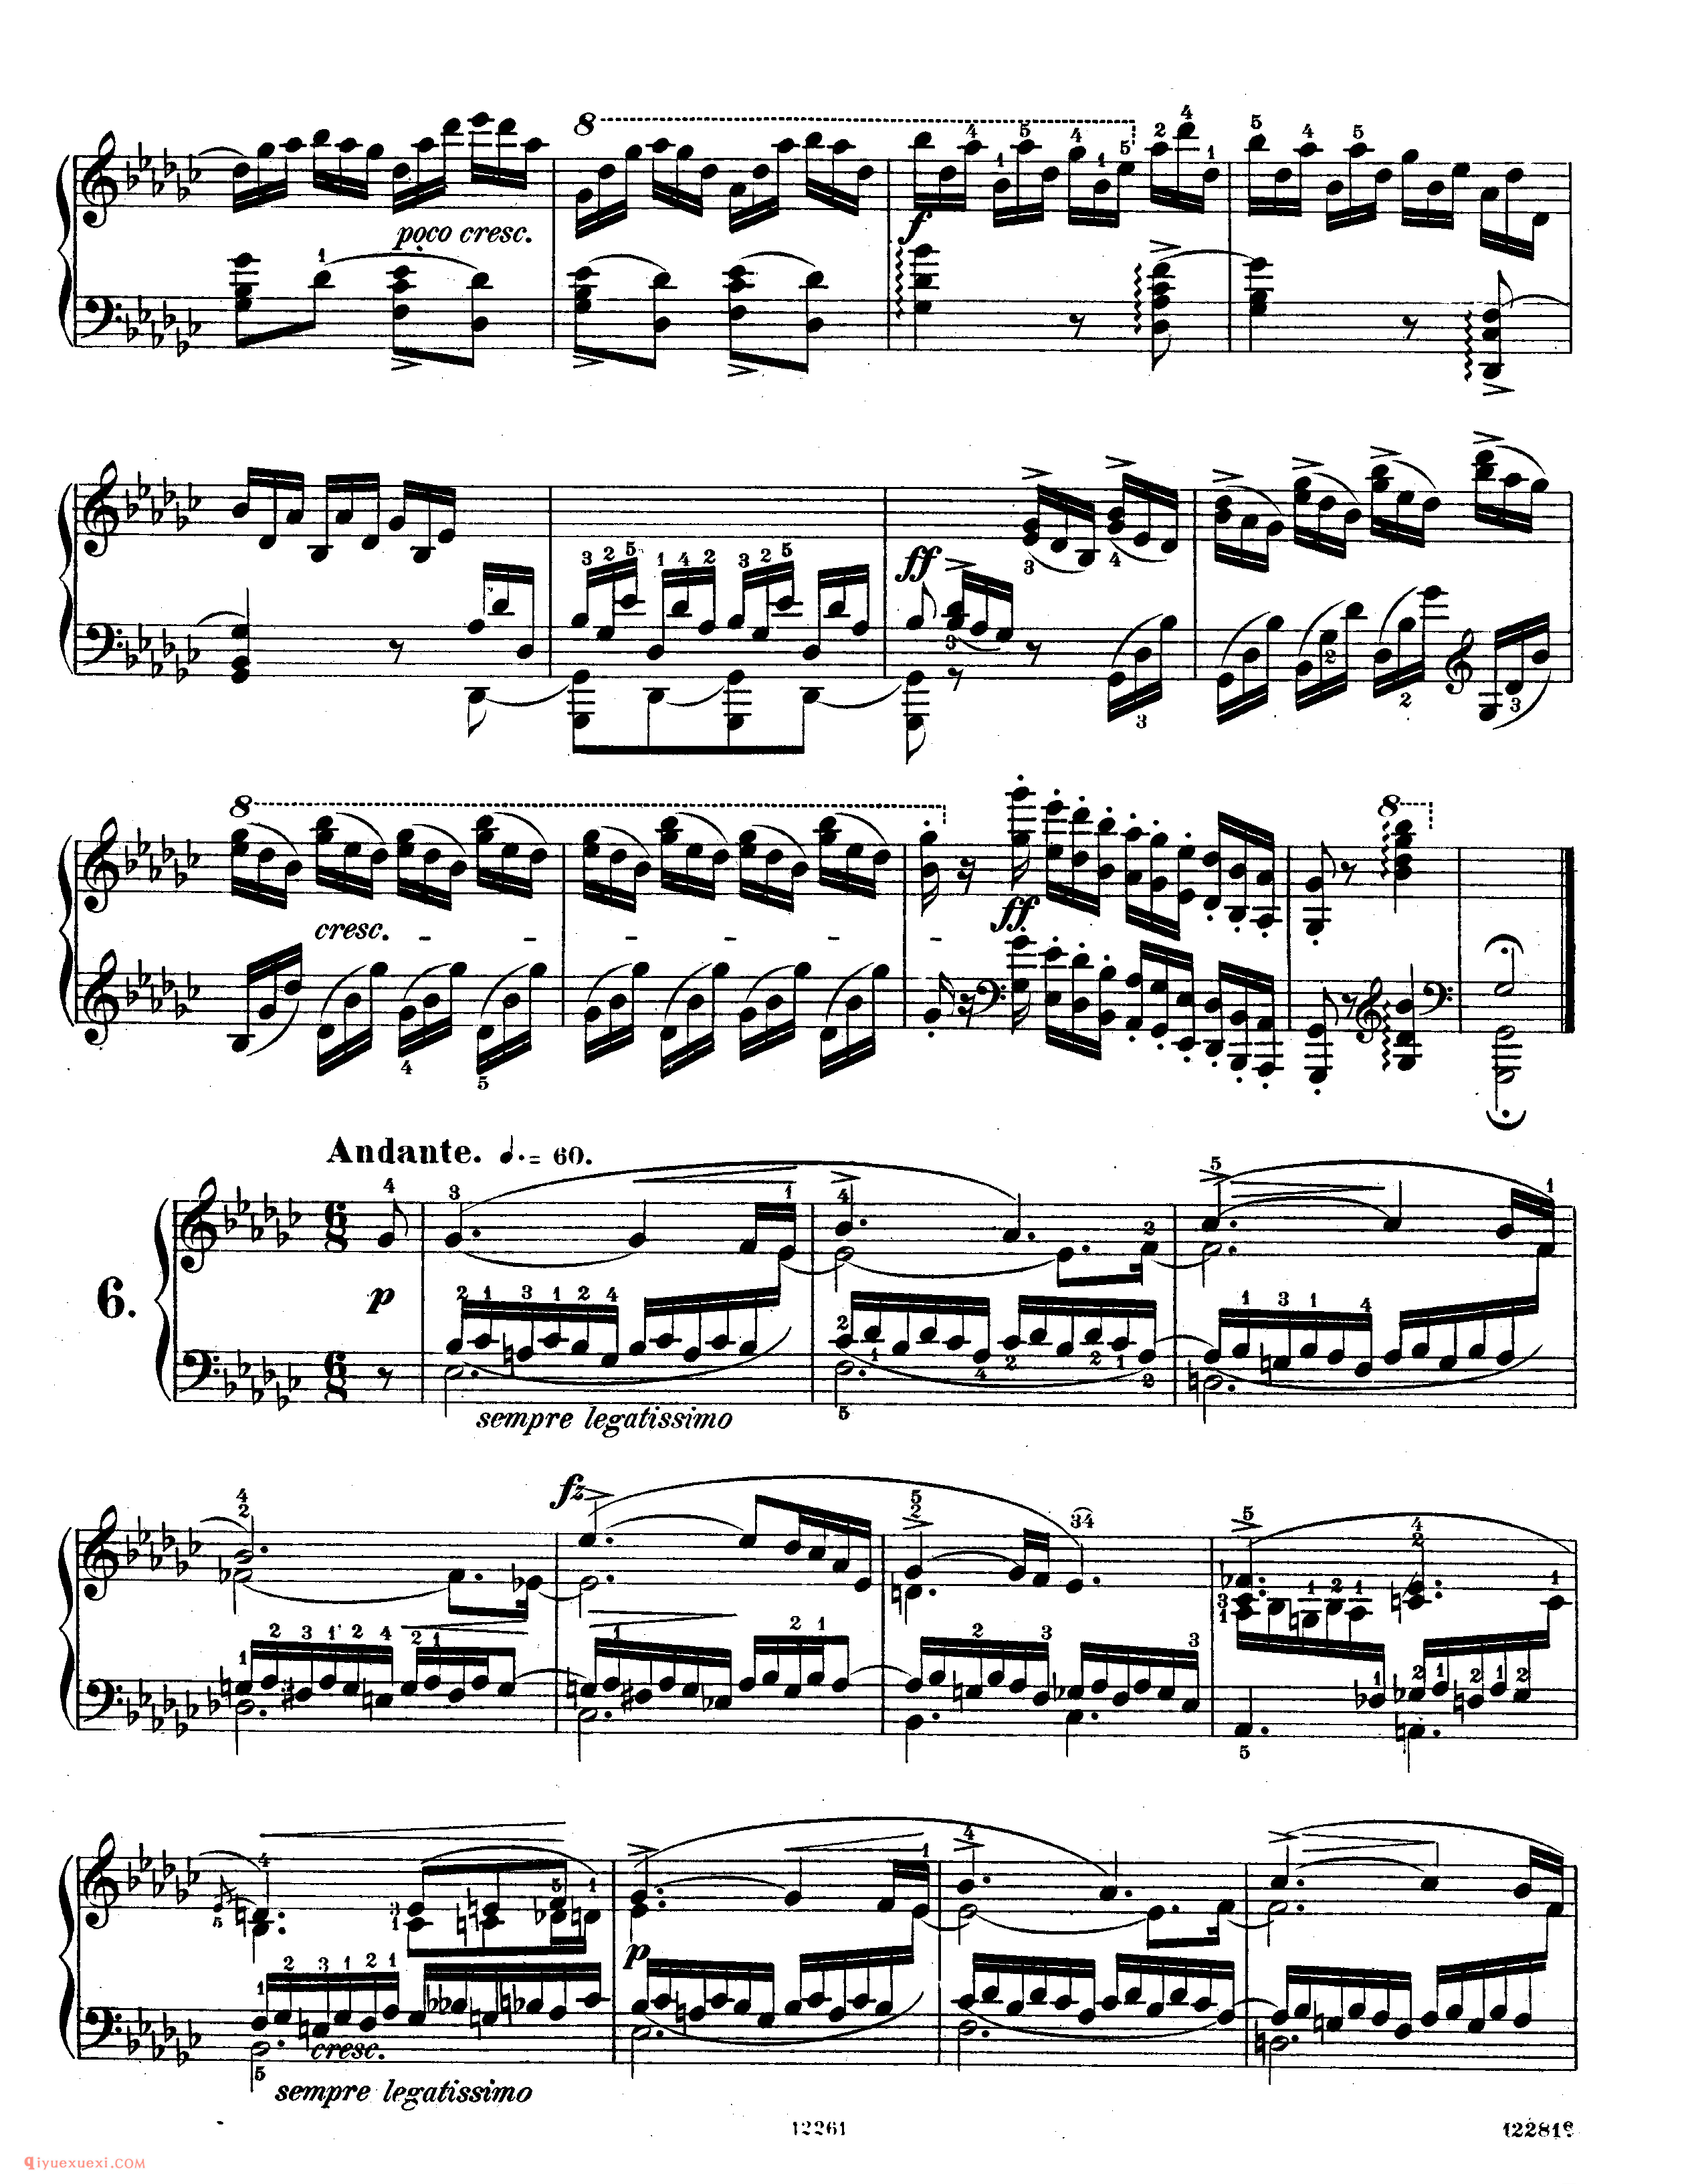 肖邦《练习曲》作品10 Chopin Etudes Op.10_练习曲_肖邦钢琴谱